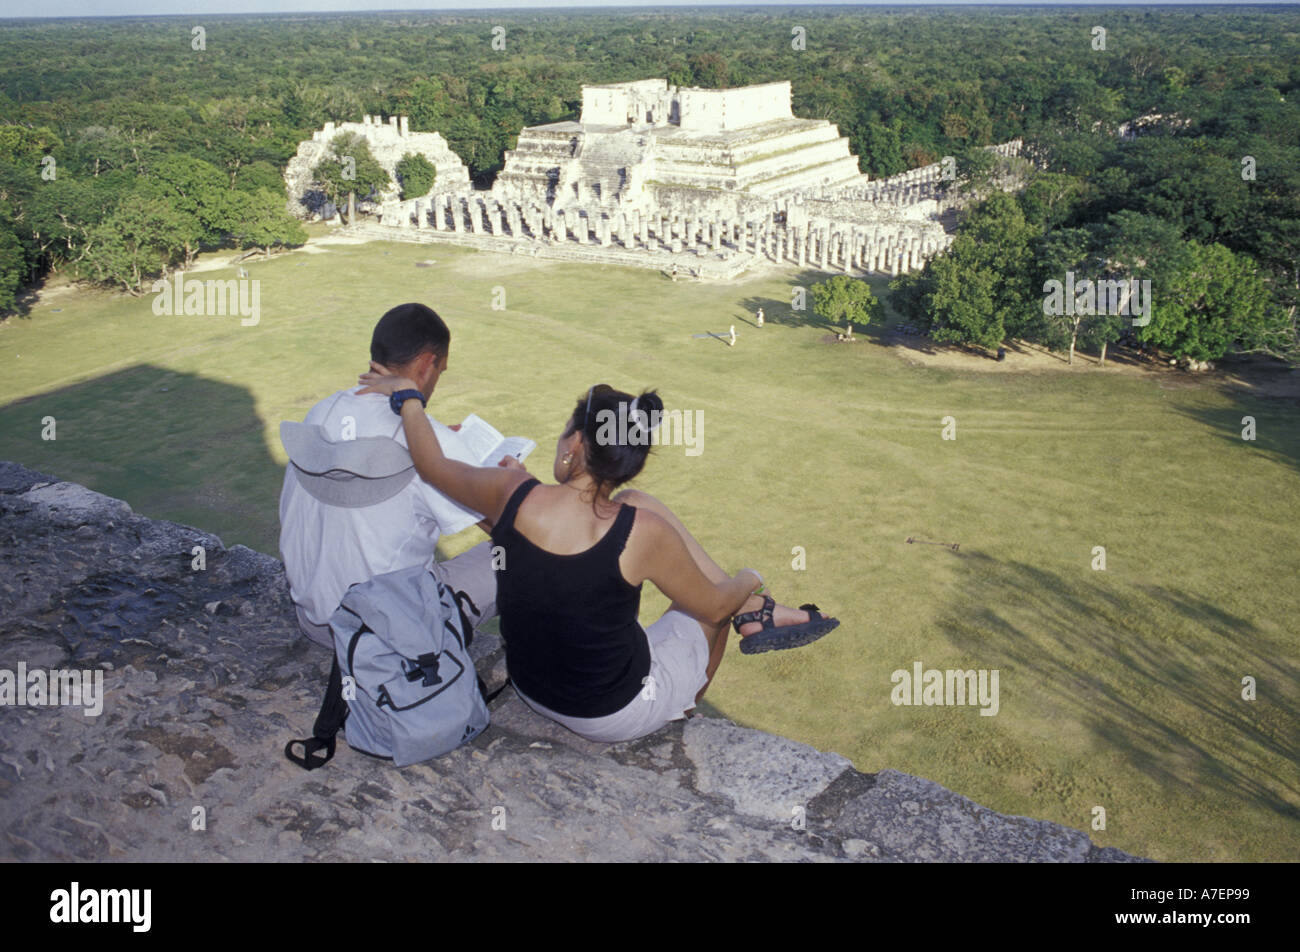 Mexico, Yucatan. Temple of Columns; Chichen Itza ruins, Maya Civilization, 7th-13th C. Stock Photo